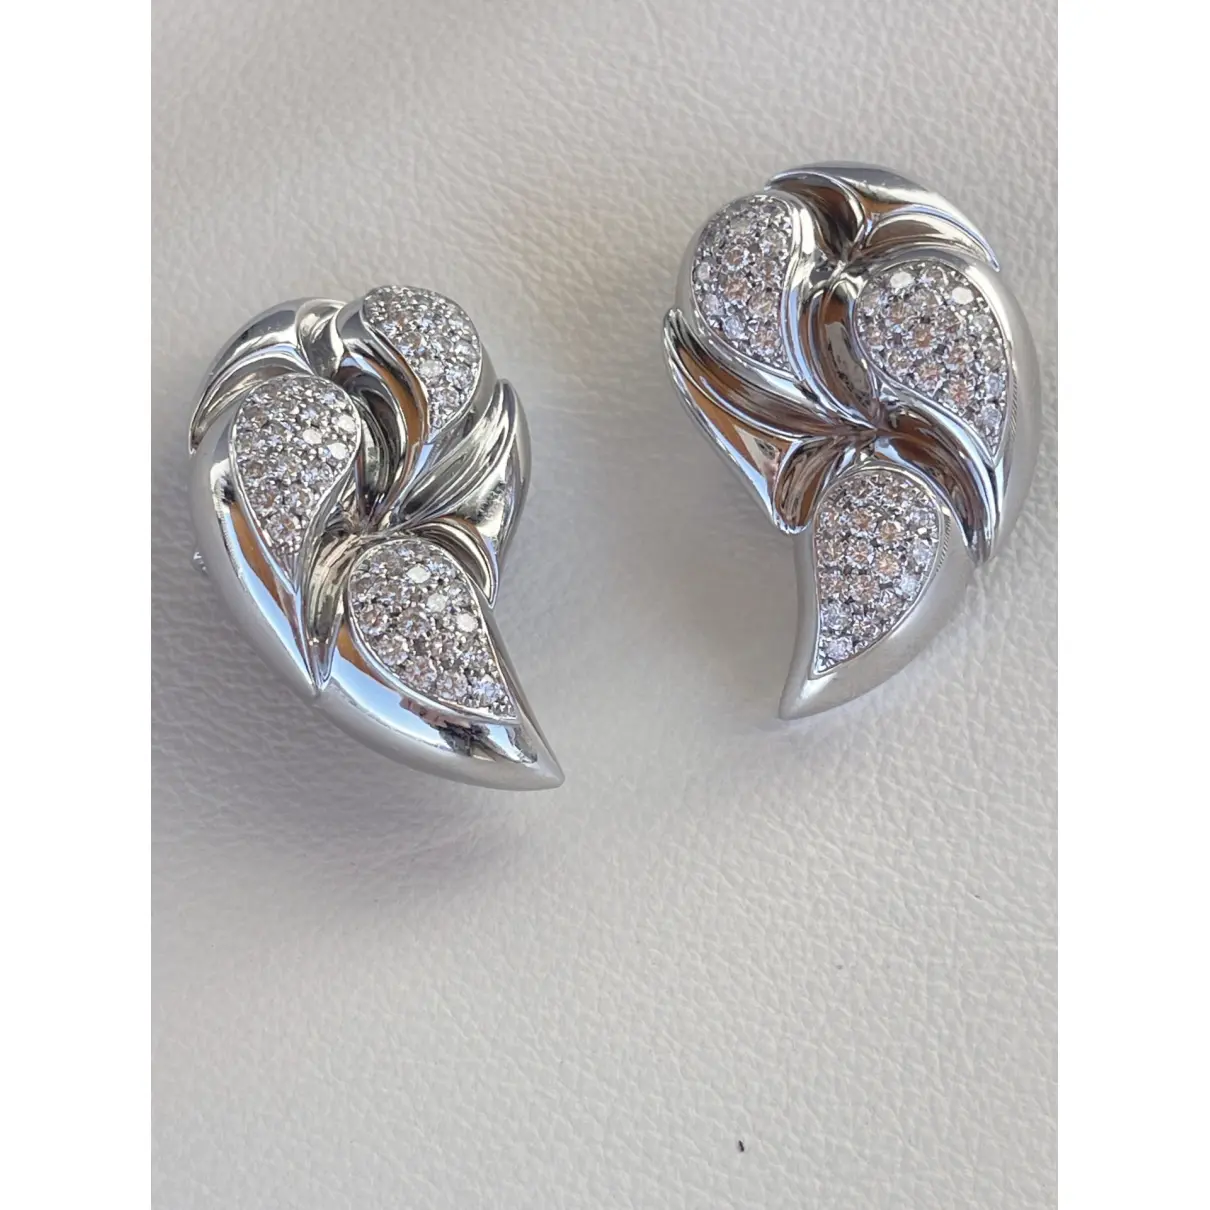 Buy Chopard Casmir white gold earrings online